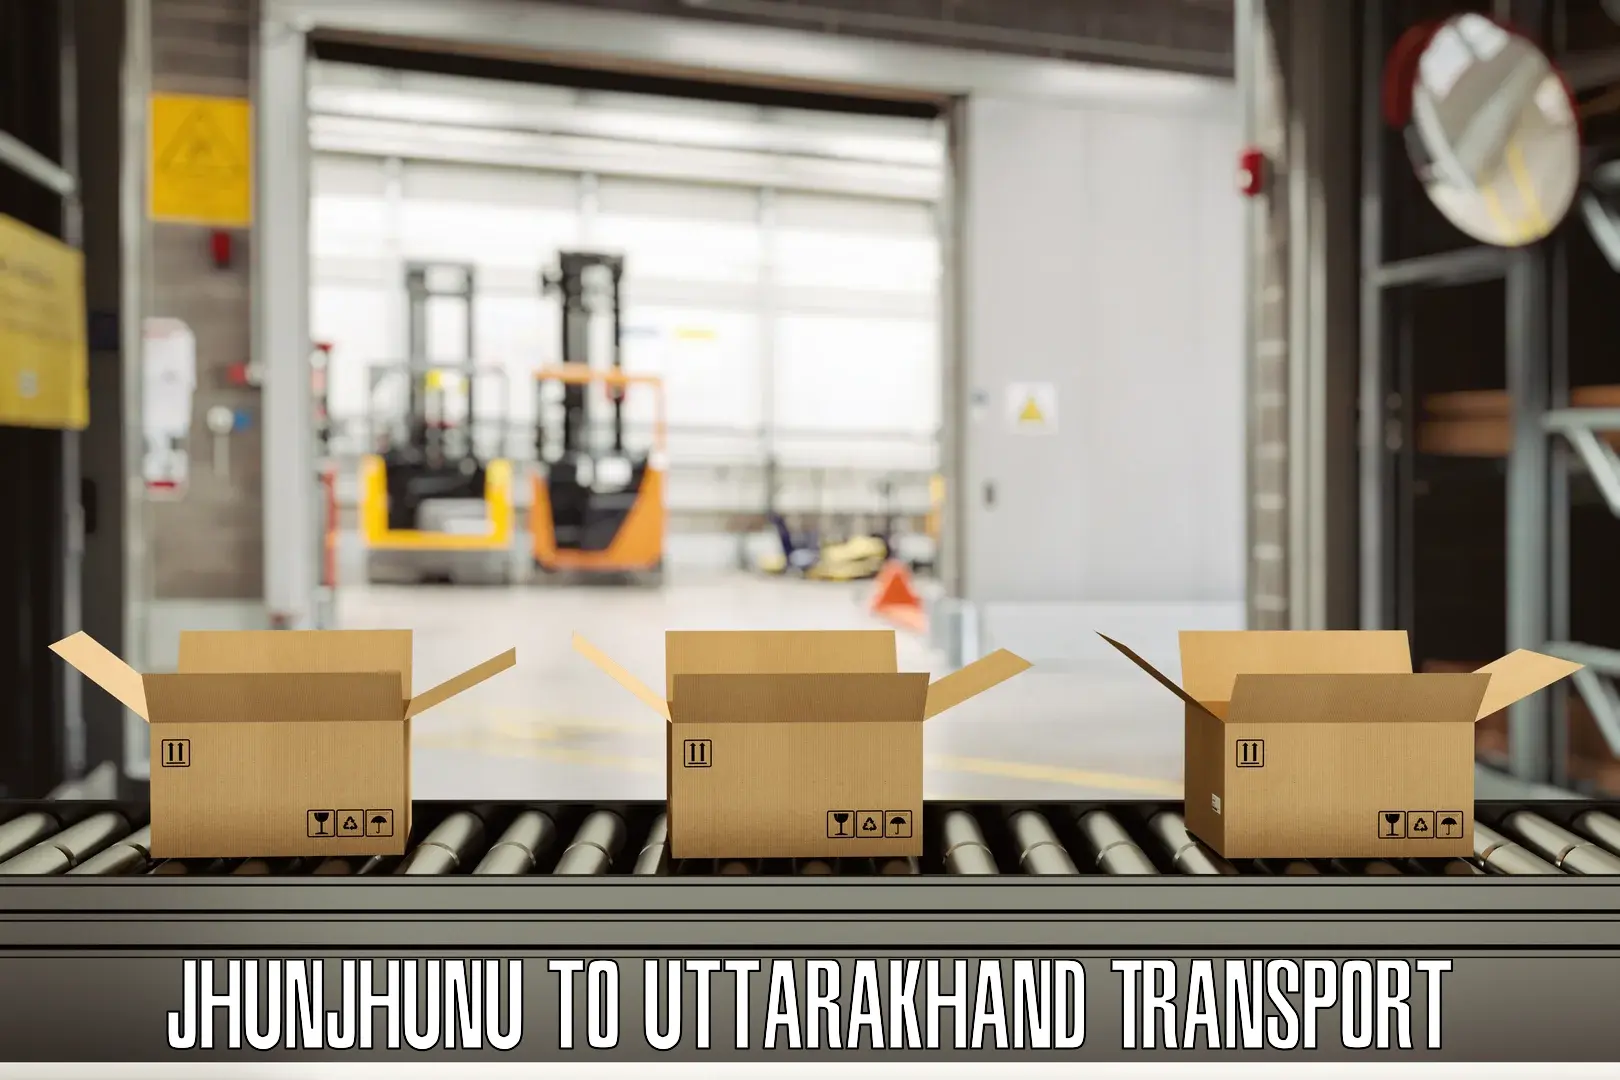 Transport in sharing in Jhunjhunu to Uttarkashi